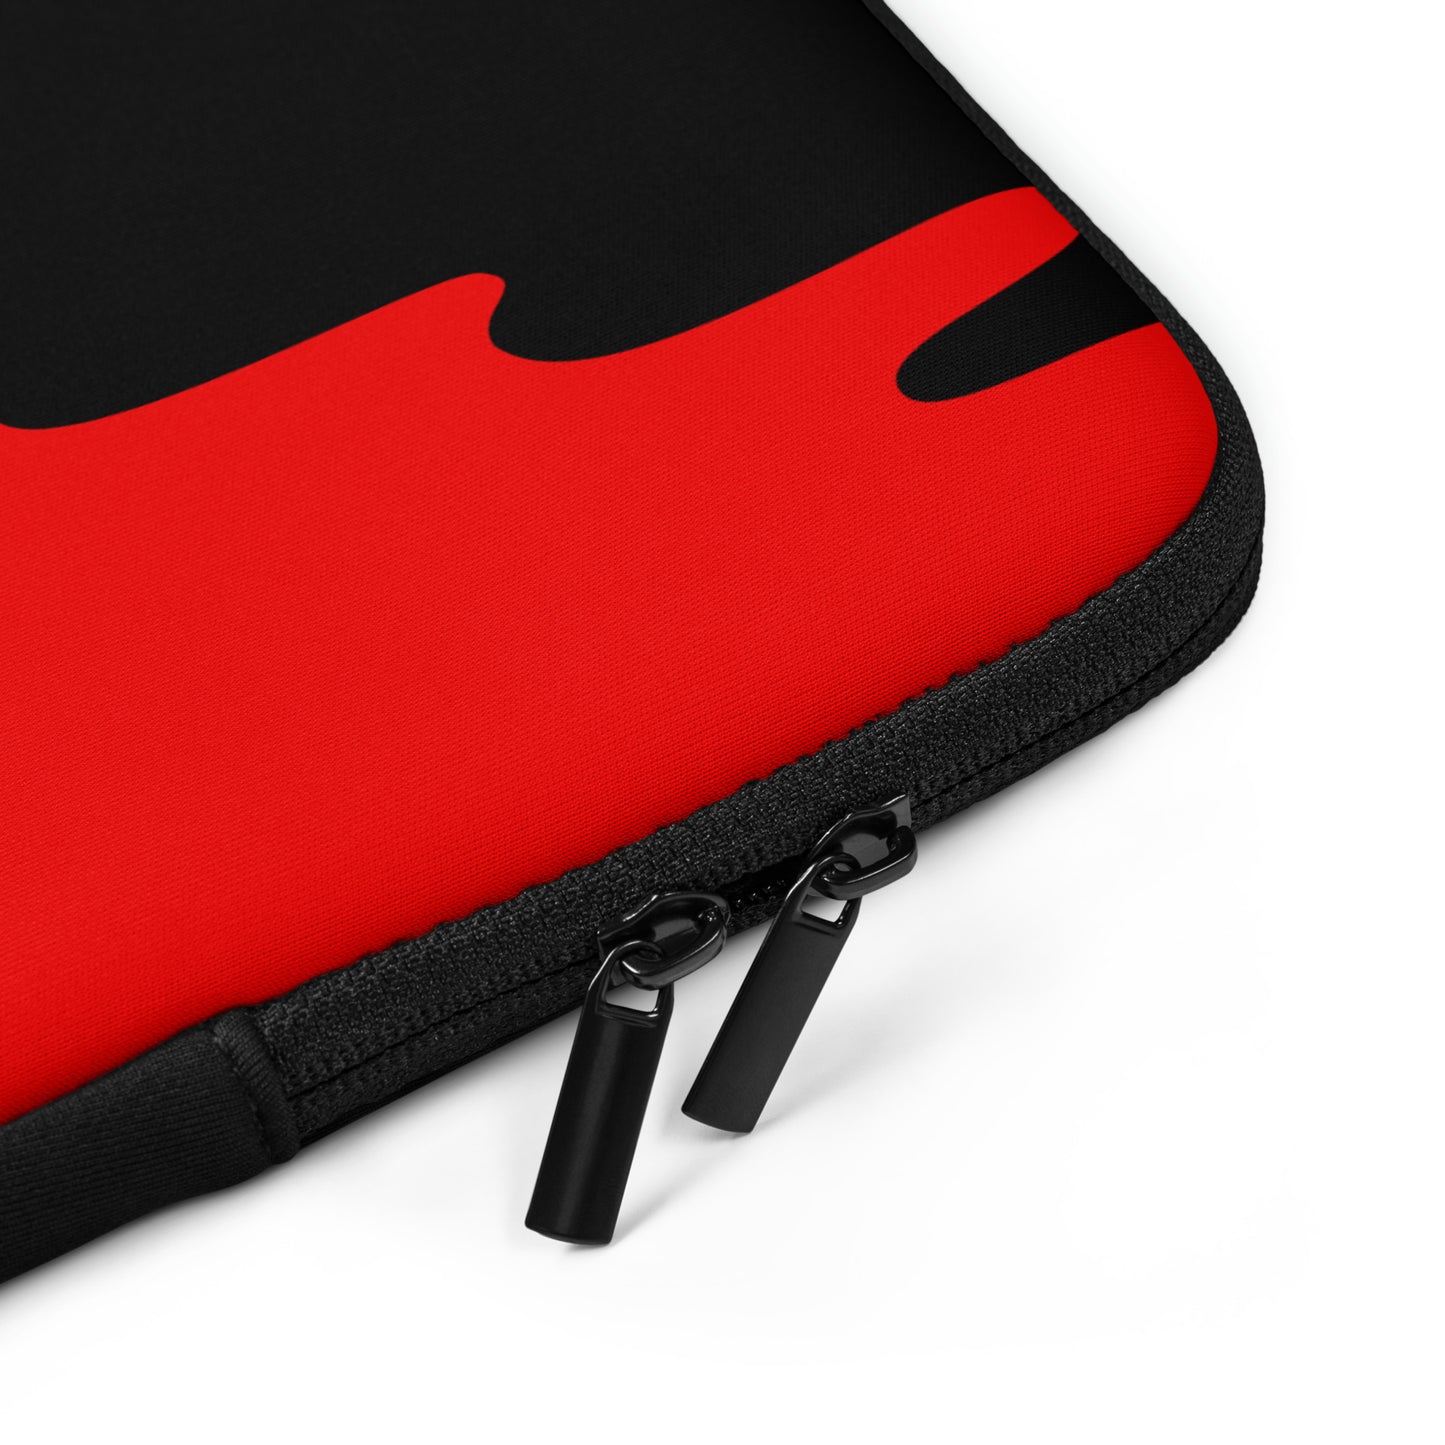 'The LOTUS' Dark Logo - Red Laptop Sleeve